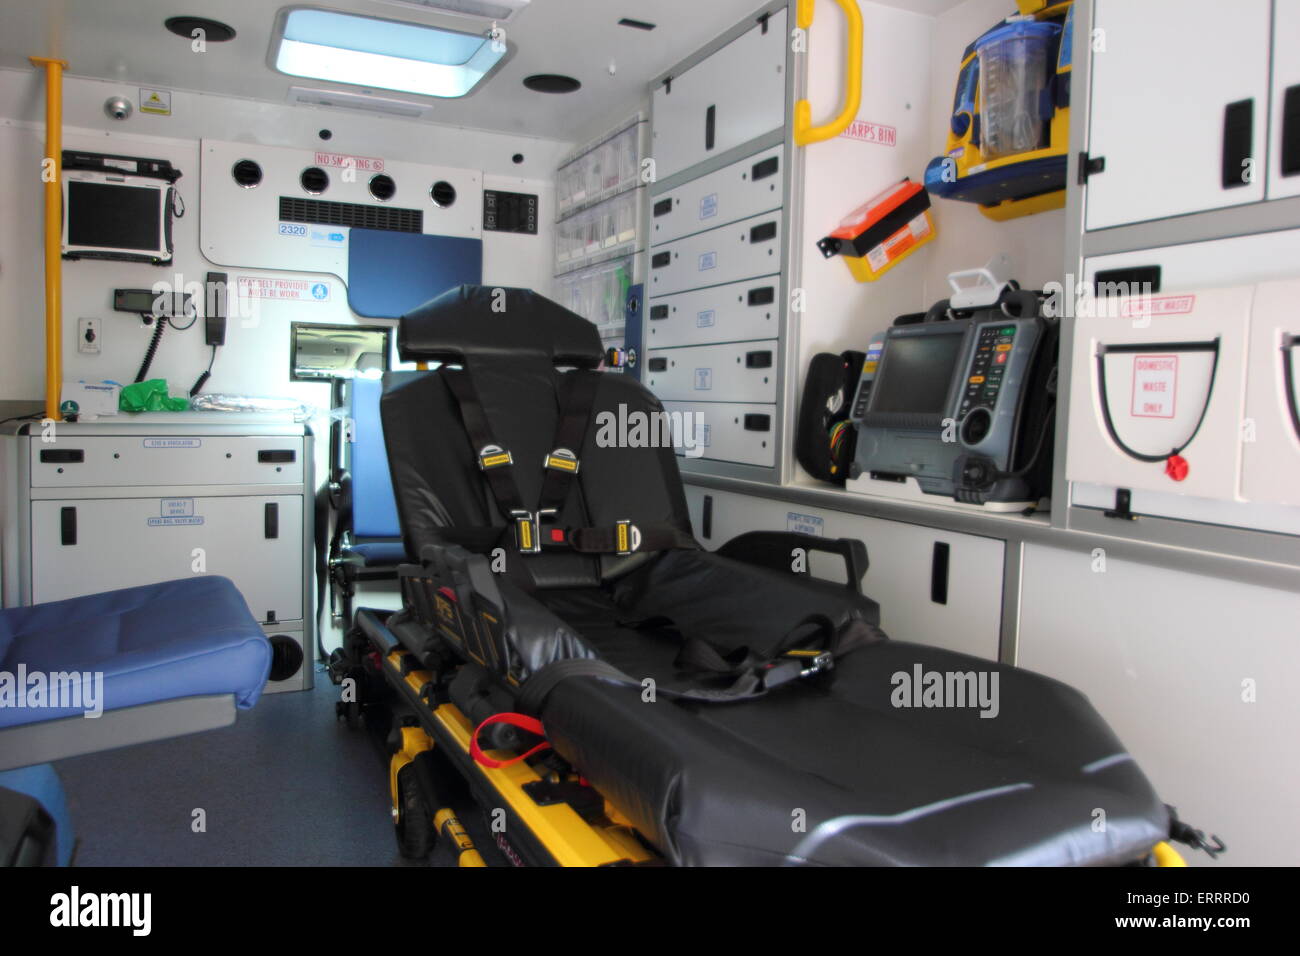 Intérieur de l'ambulance, England, UK Banque D'Images